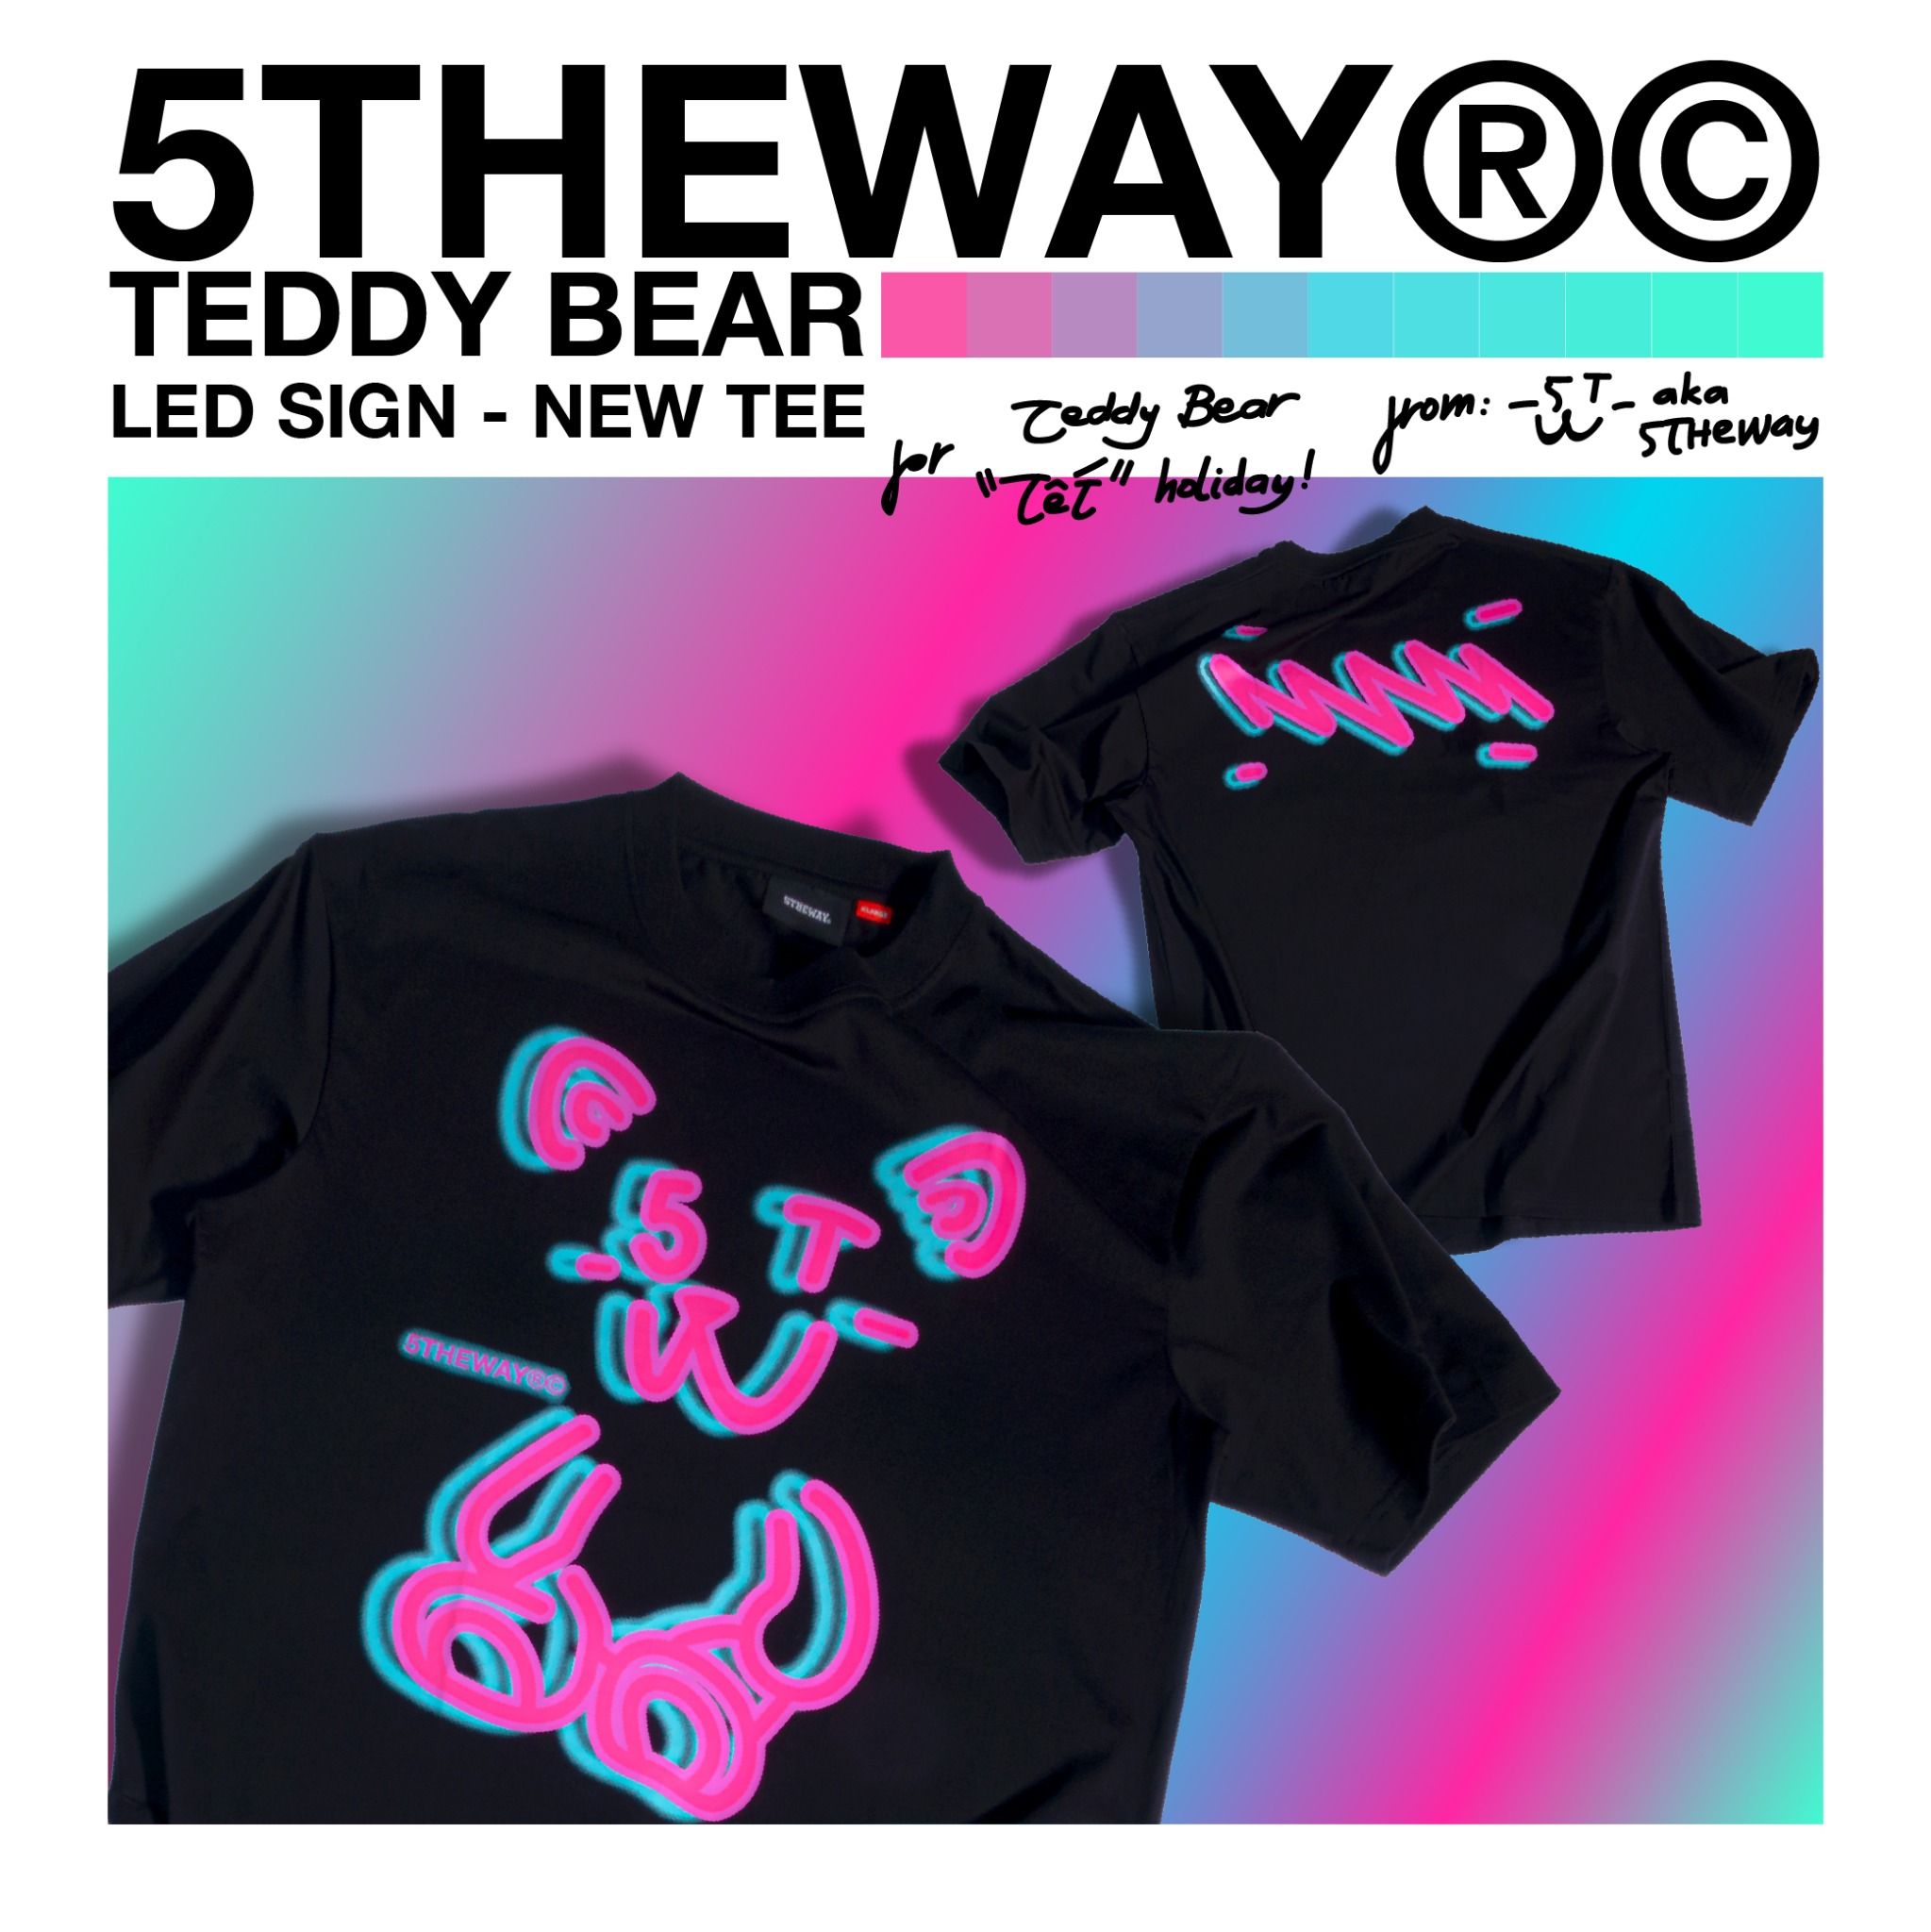 LED SIGN /teddy bear/ NEW TEE™